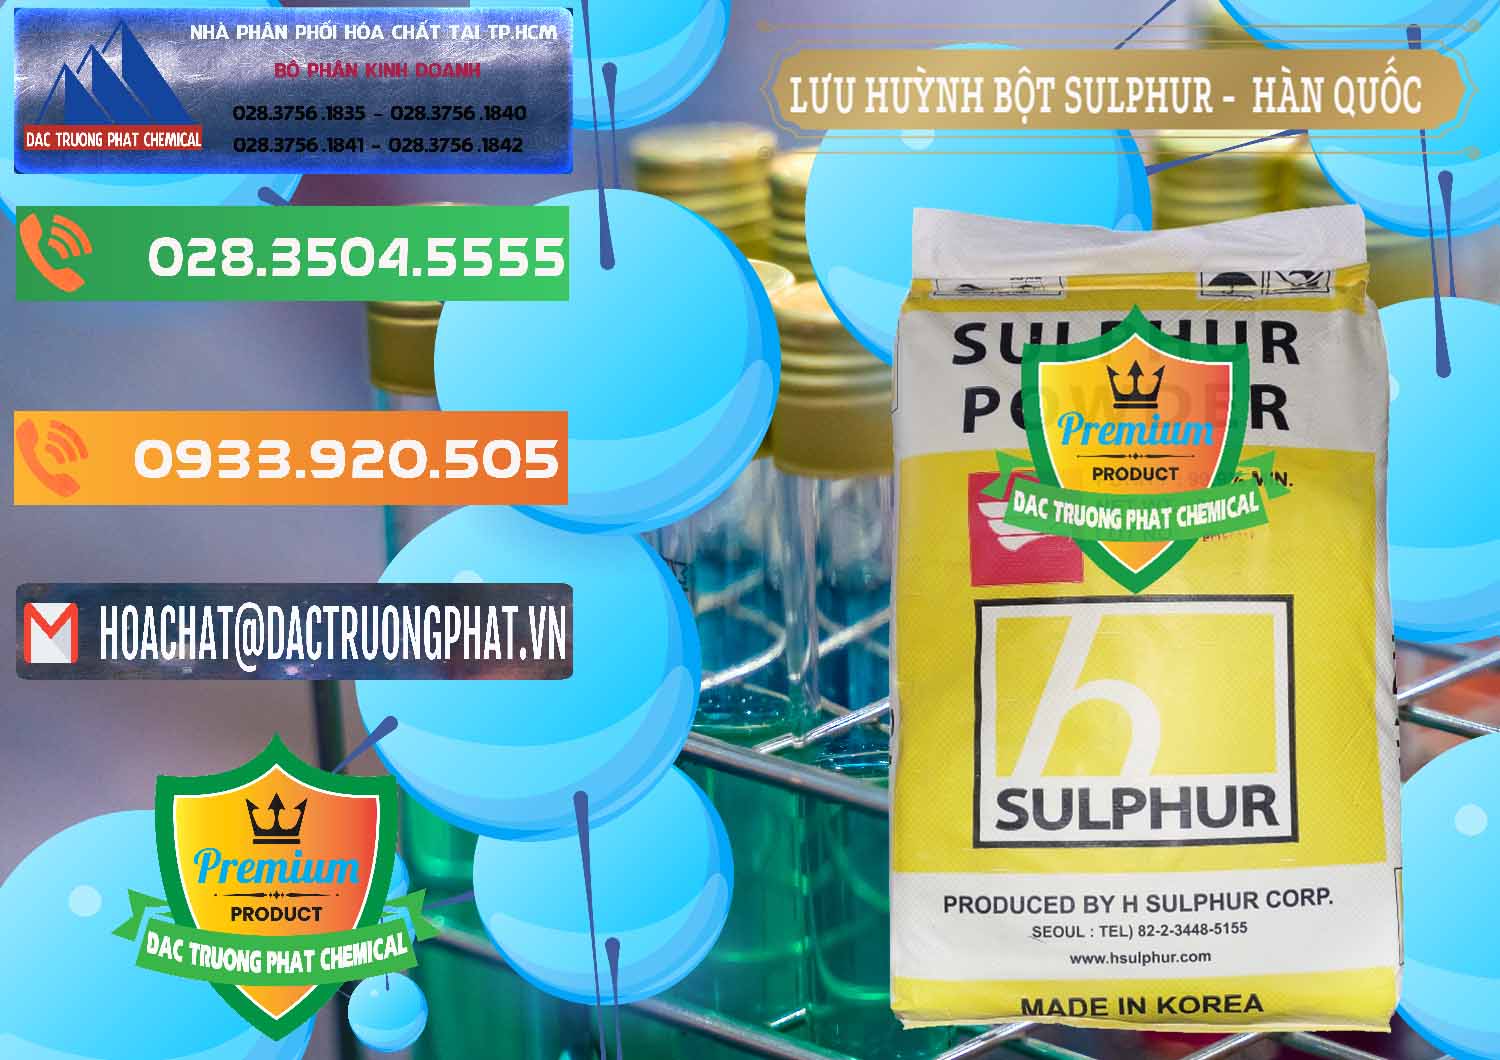 Cty bán - phân phối Lưu huỳnh Bột - Sulfur Powder ( H Sulfur ) Hàn Quốc Korea - 0199 - Công ty chuyên phân phối ( nhập khẩu ) hóa chất tại TP.HCM - hoachatxulynuoc.com.vn